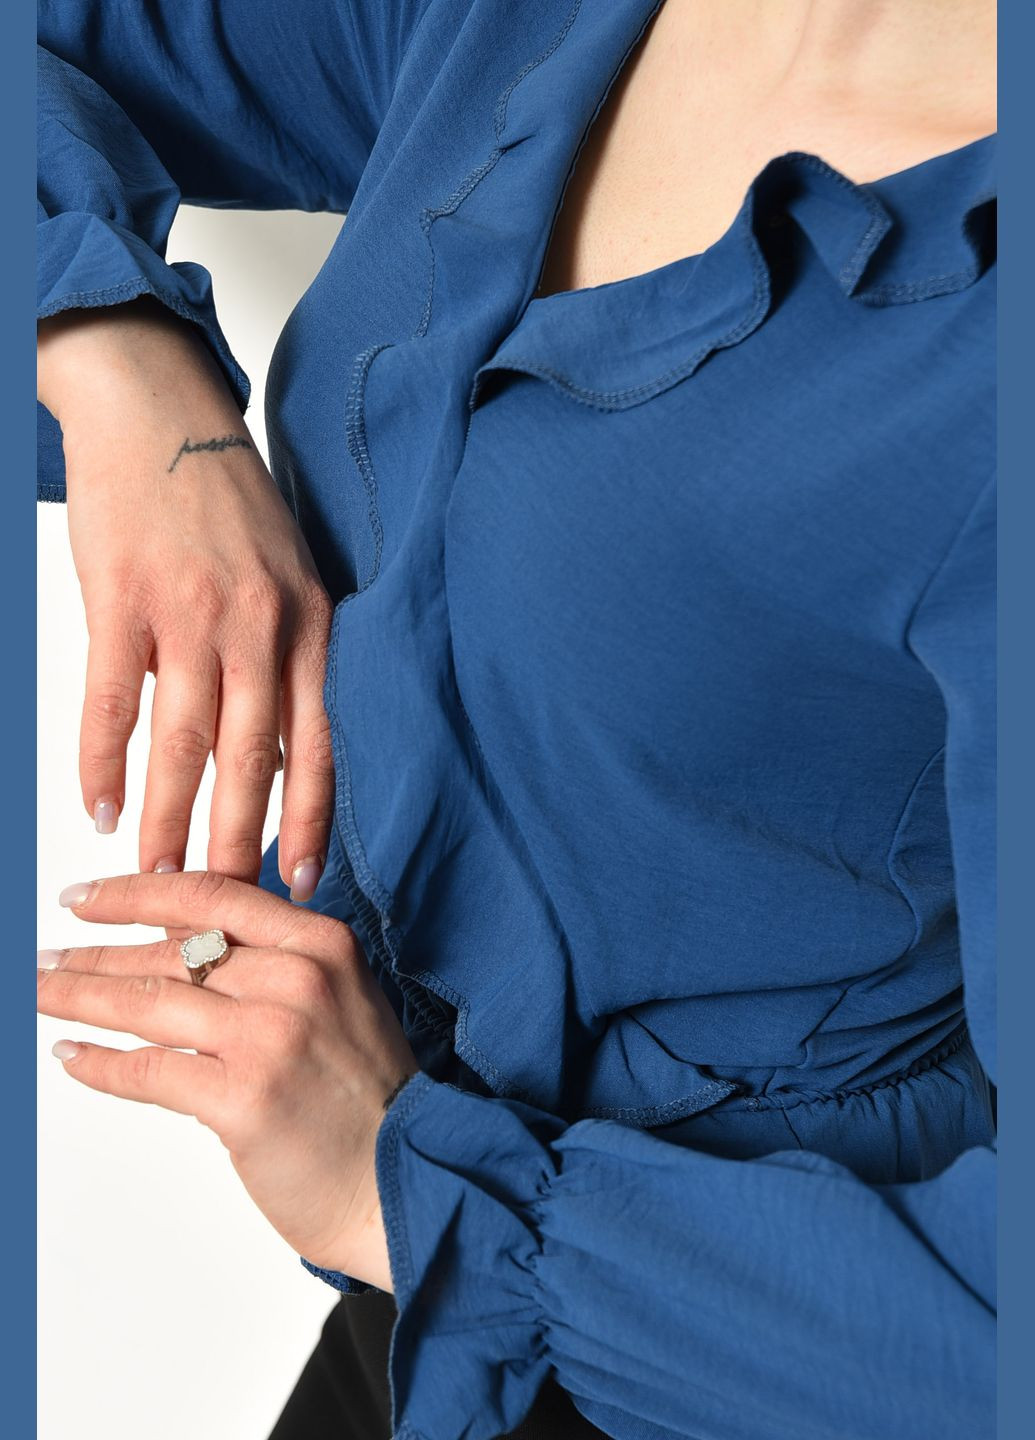 Синяя блуза женская однотонная синего цвета с баской Let's Shop